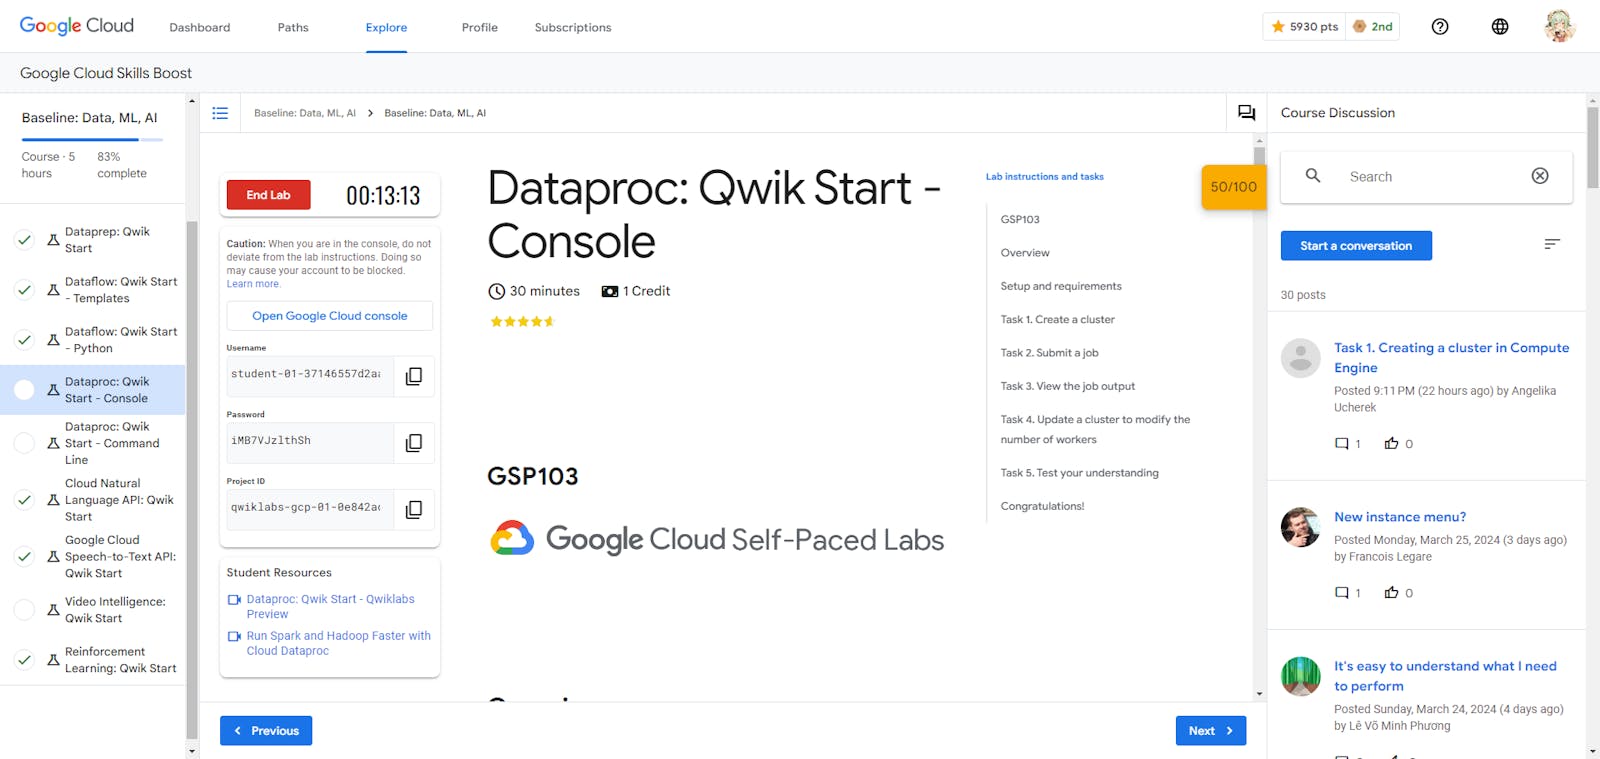 Dataproc: Qwik Start - Console